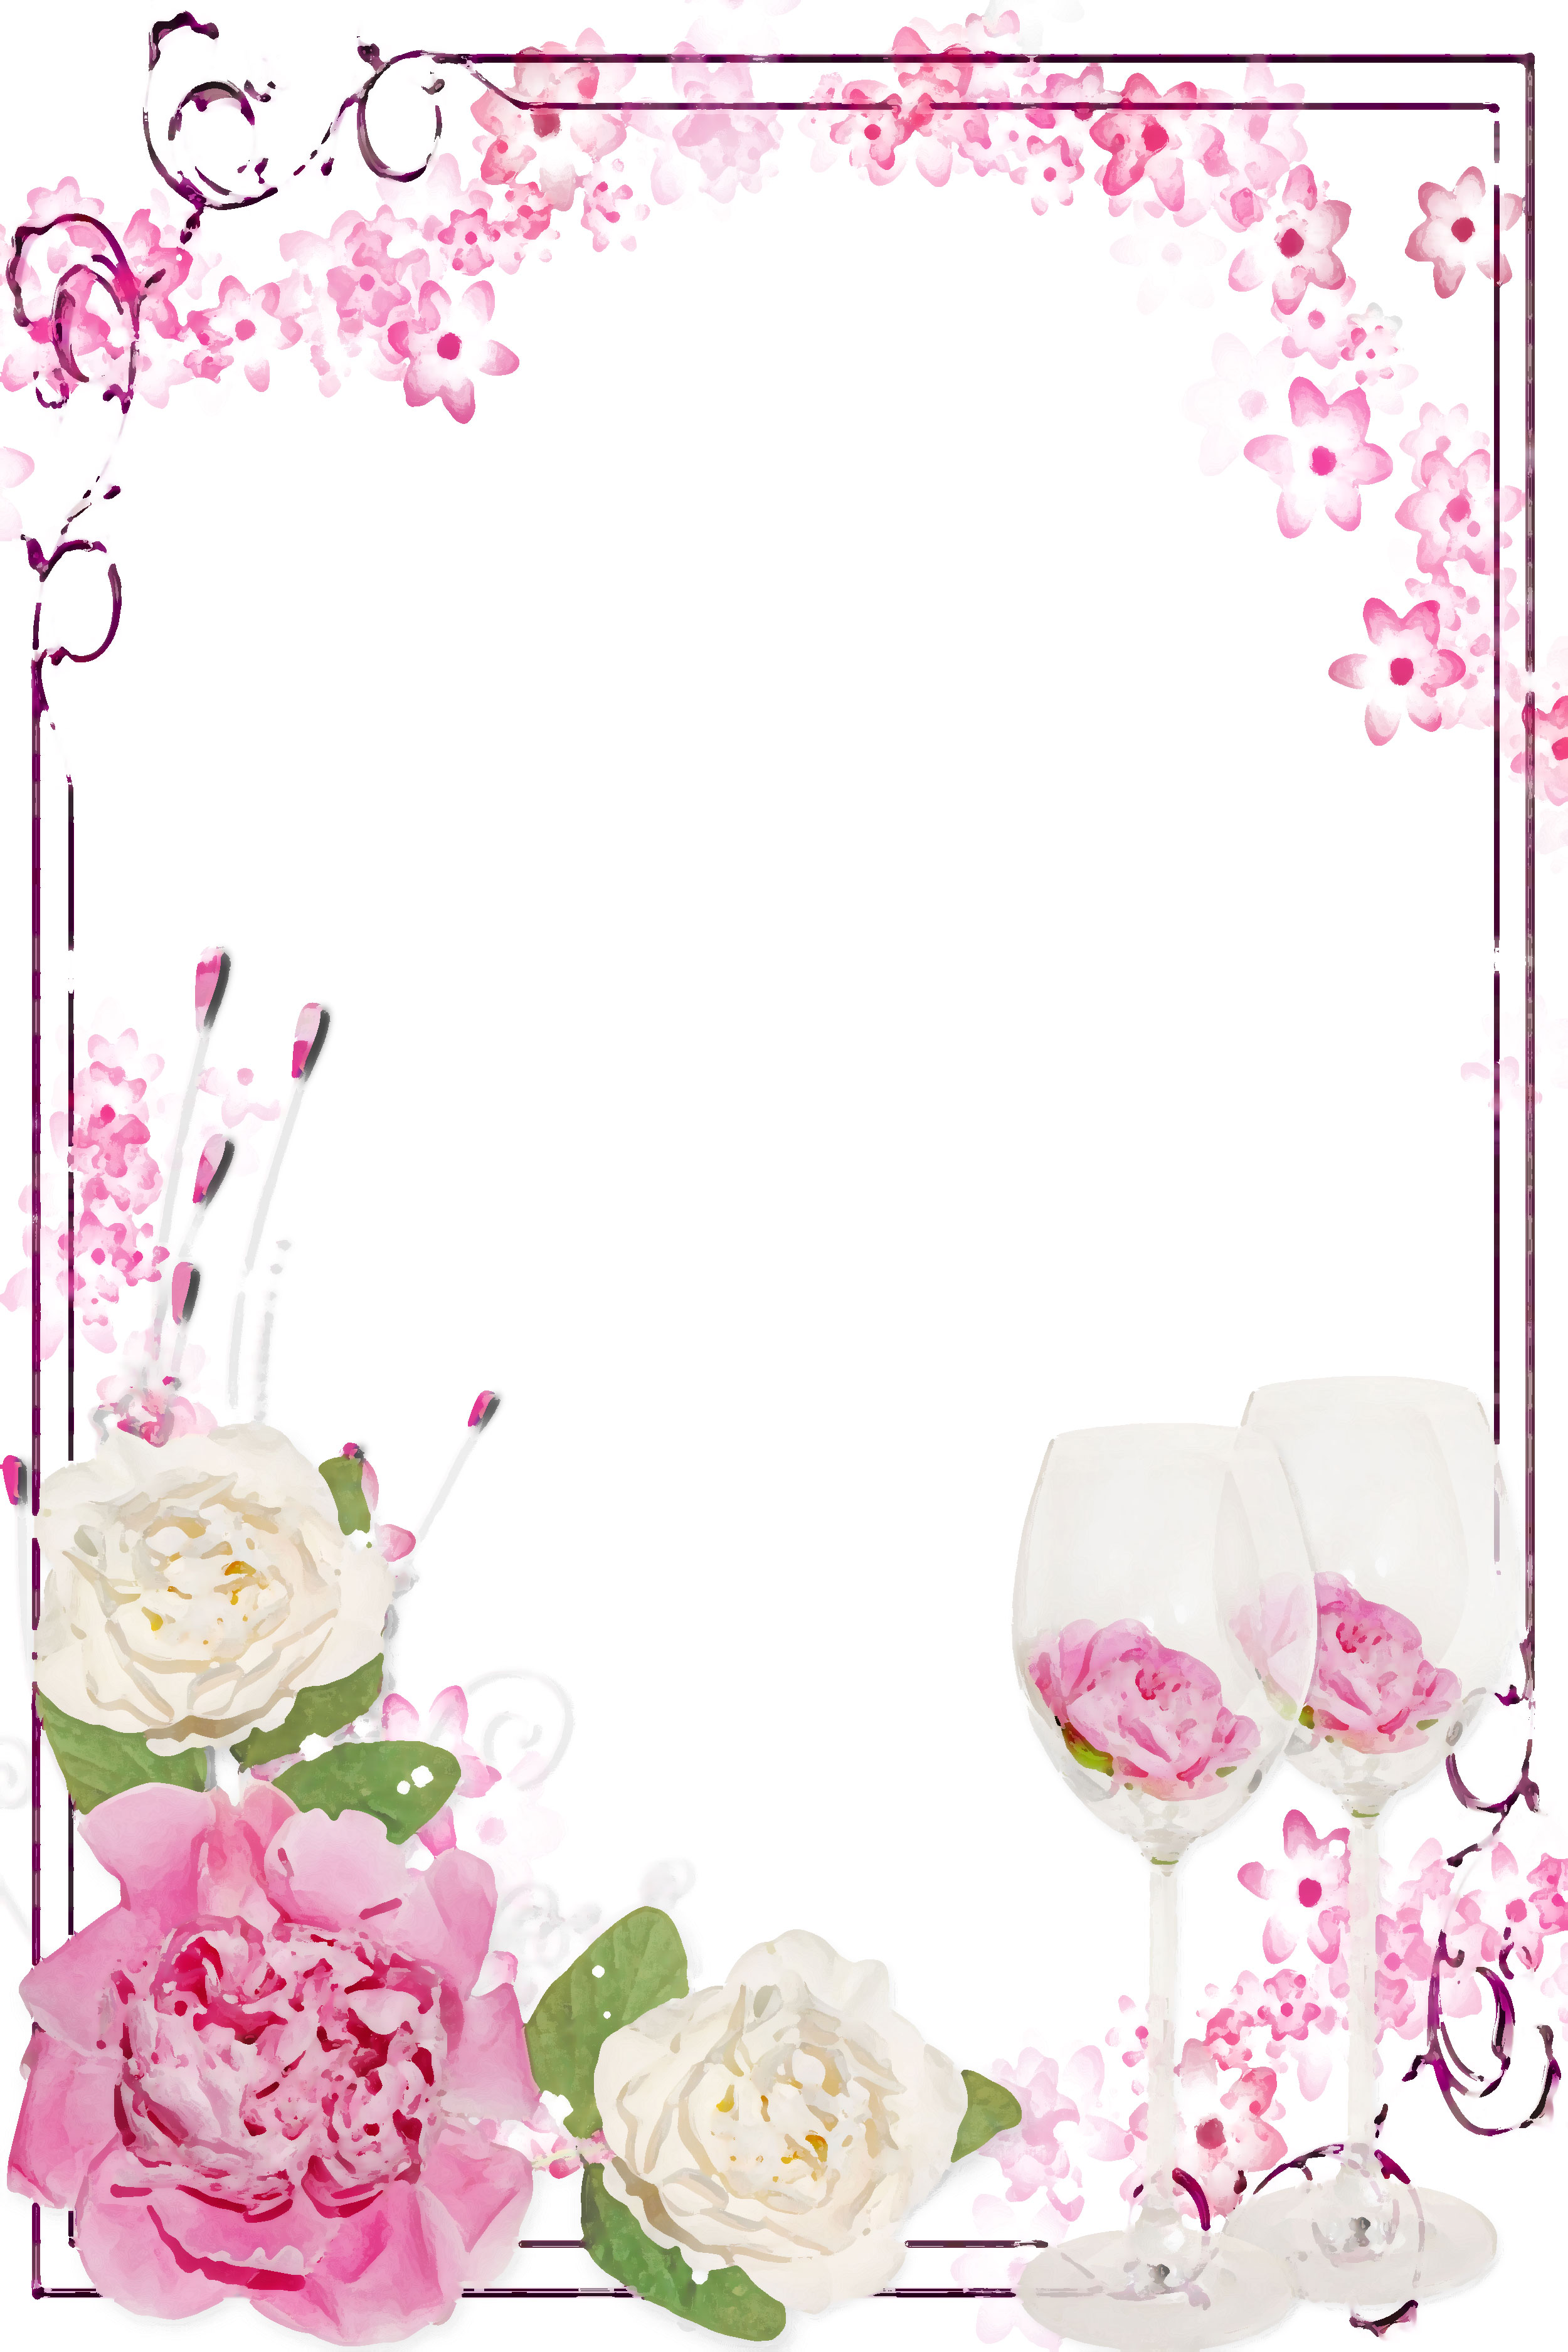 バラの画像 イラスト 壁紙 背景用 No 619 白 ピンク バラ